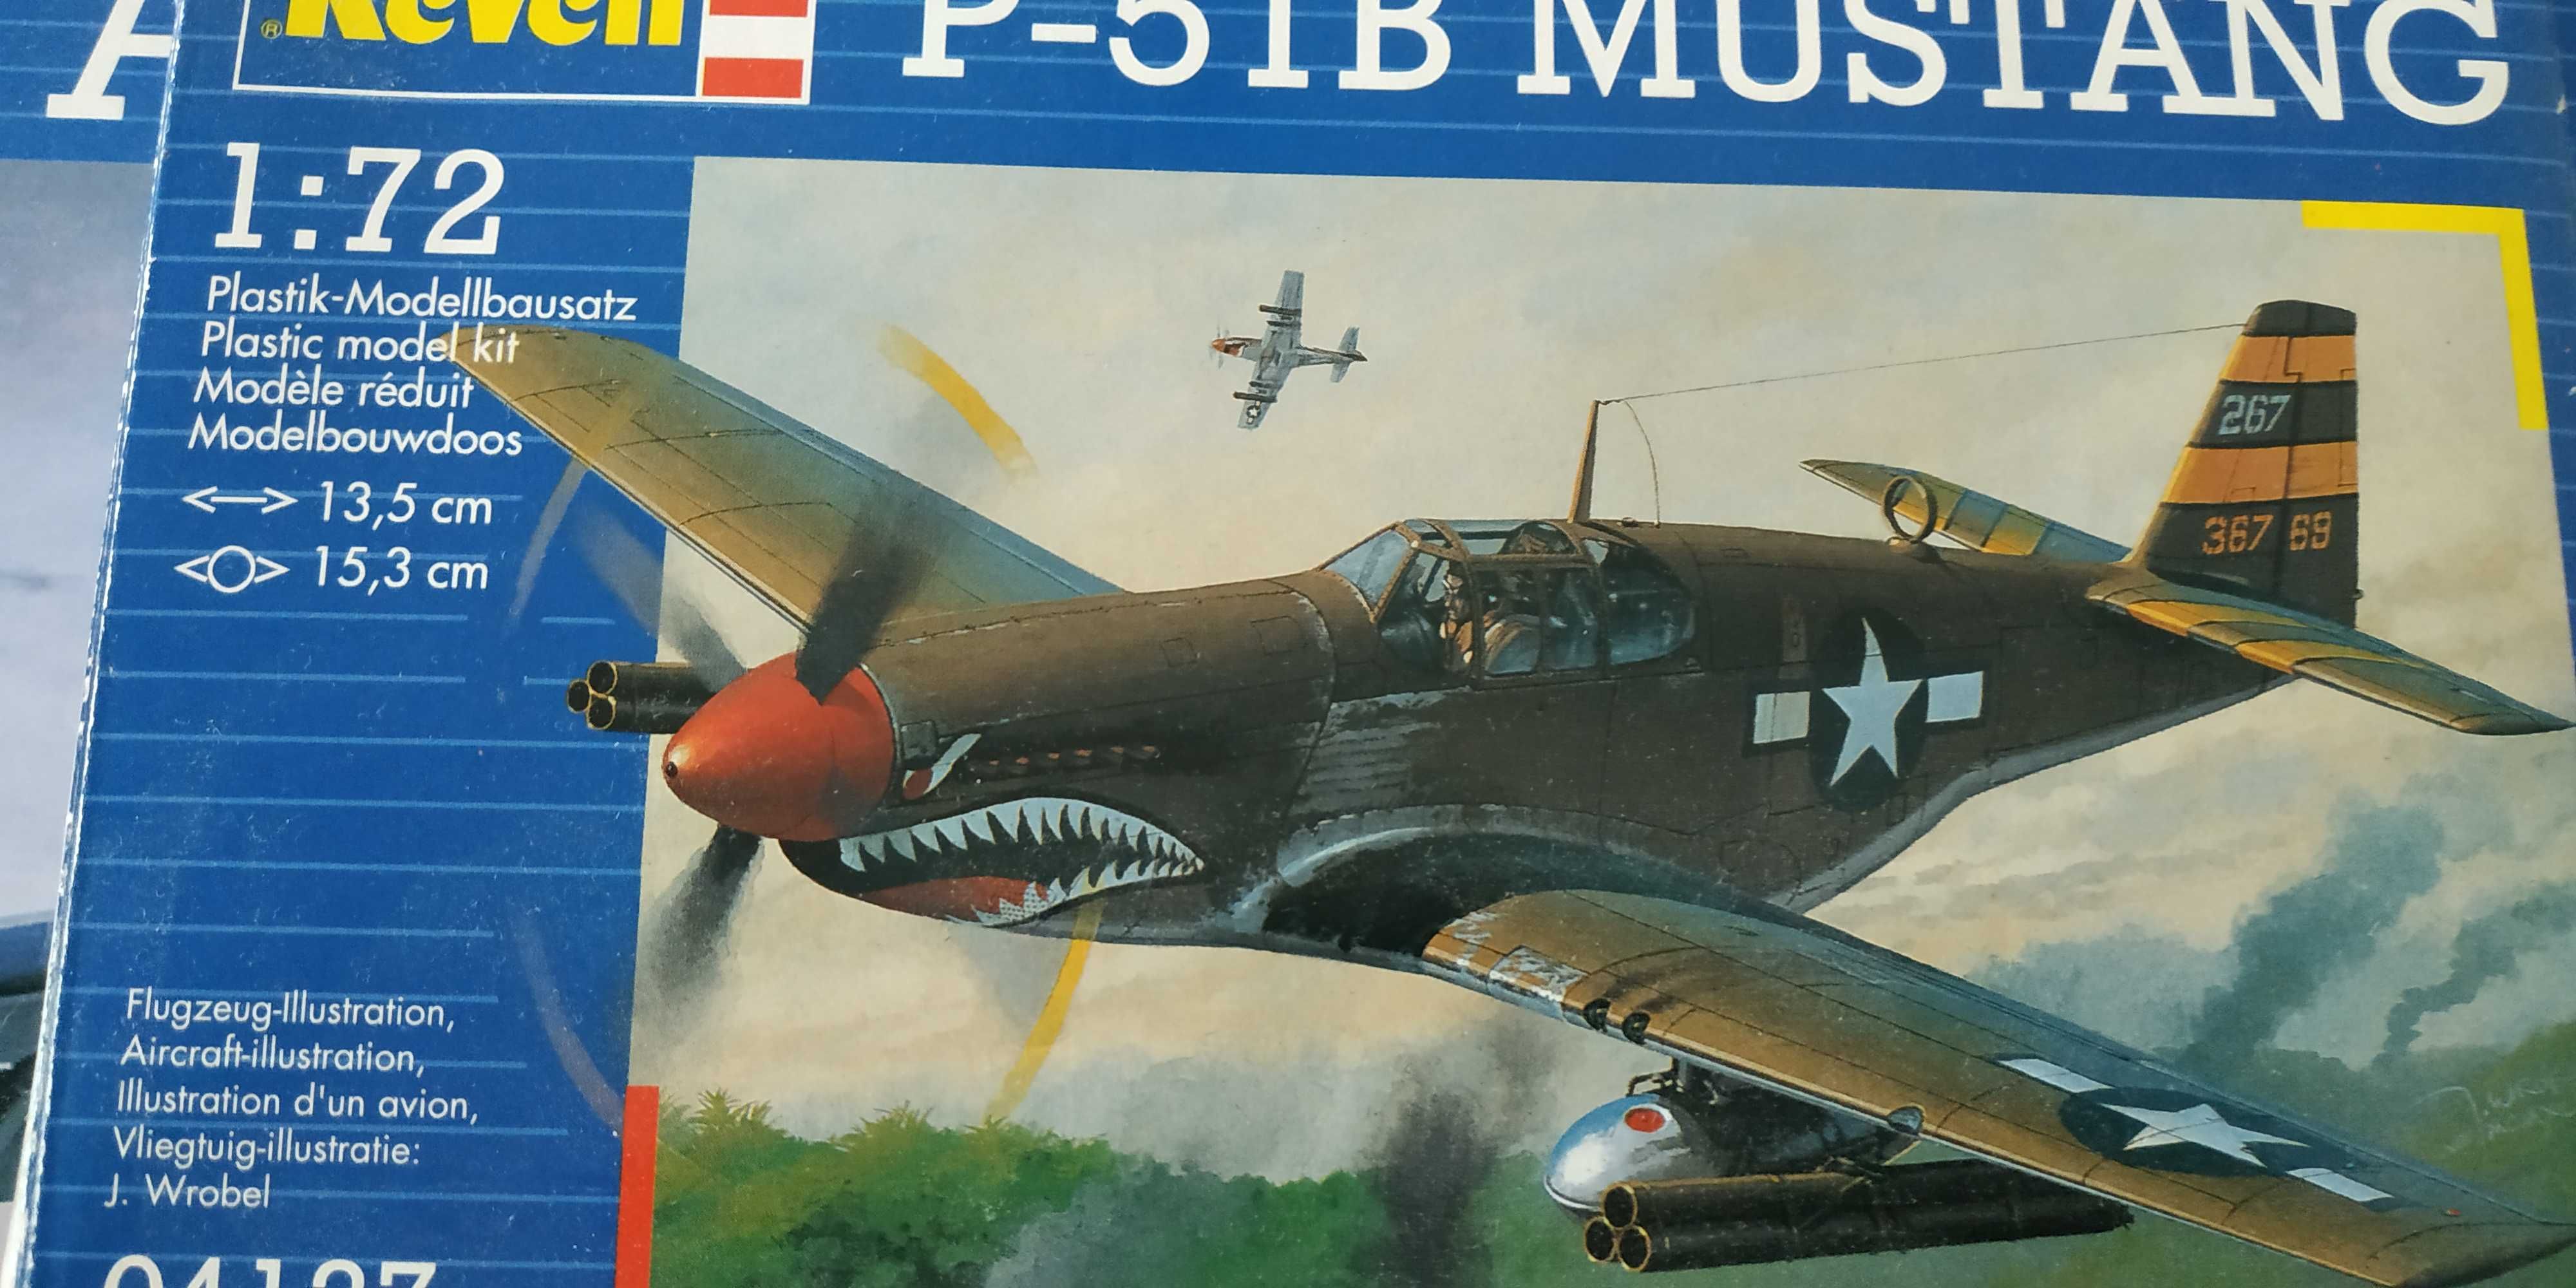 P-51 b Mustang Revell model